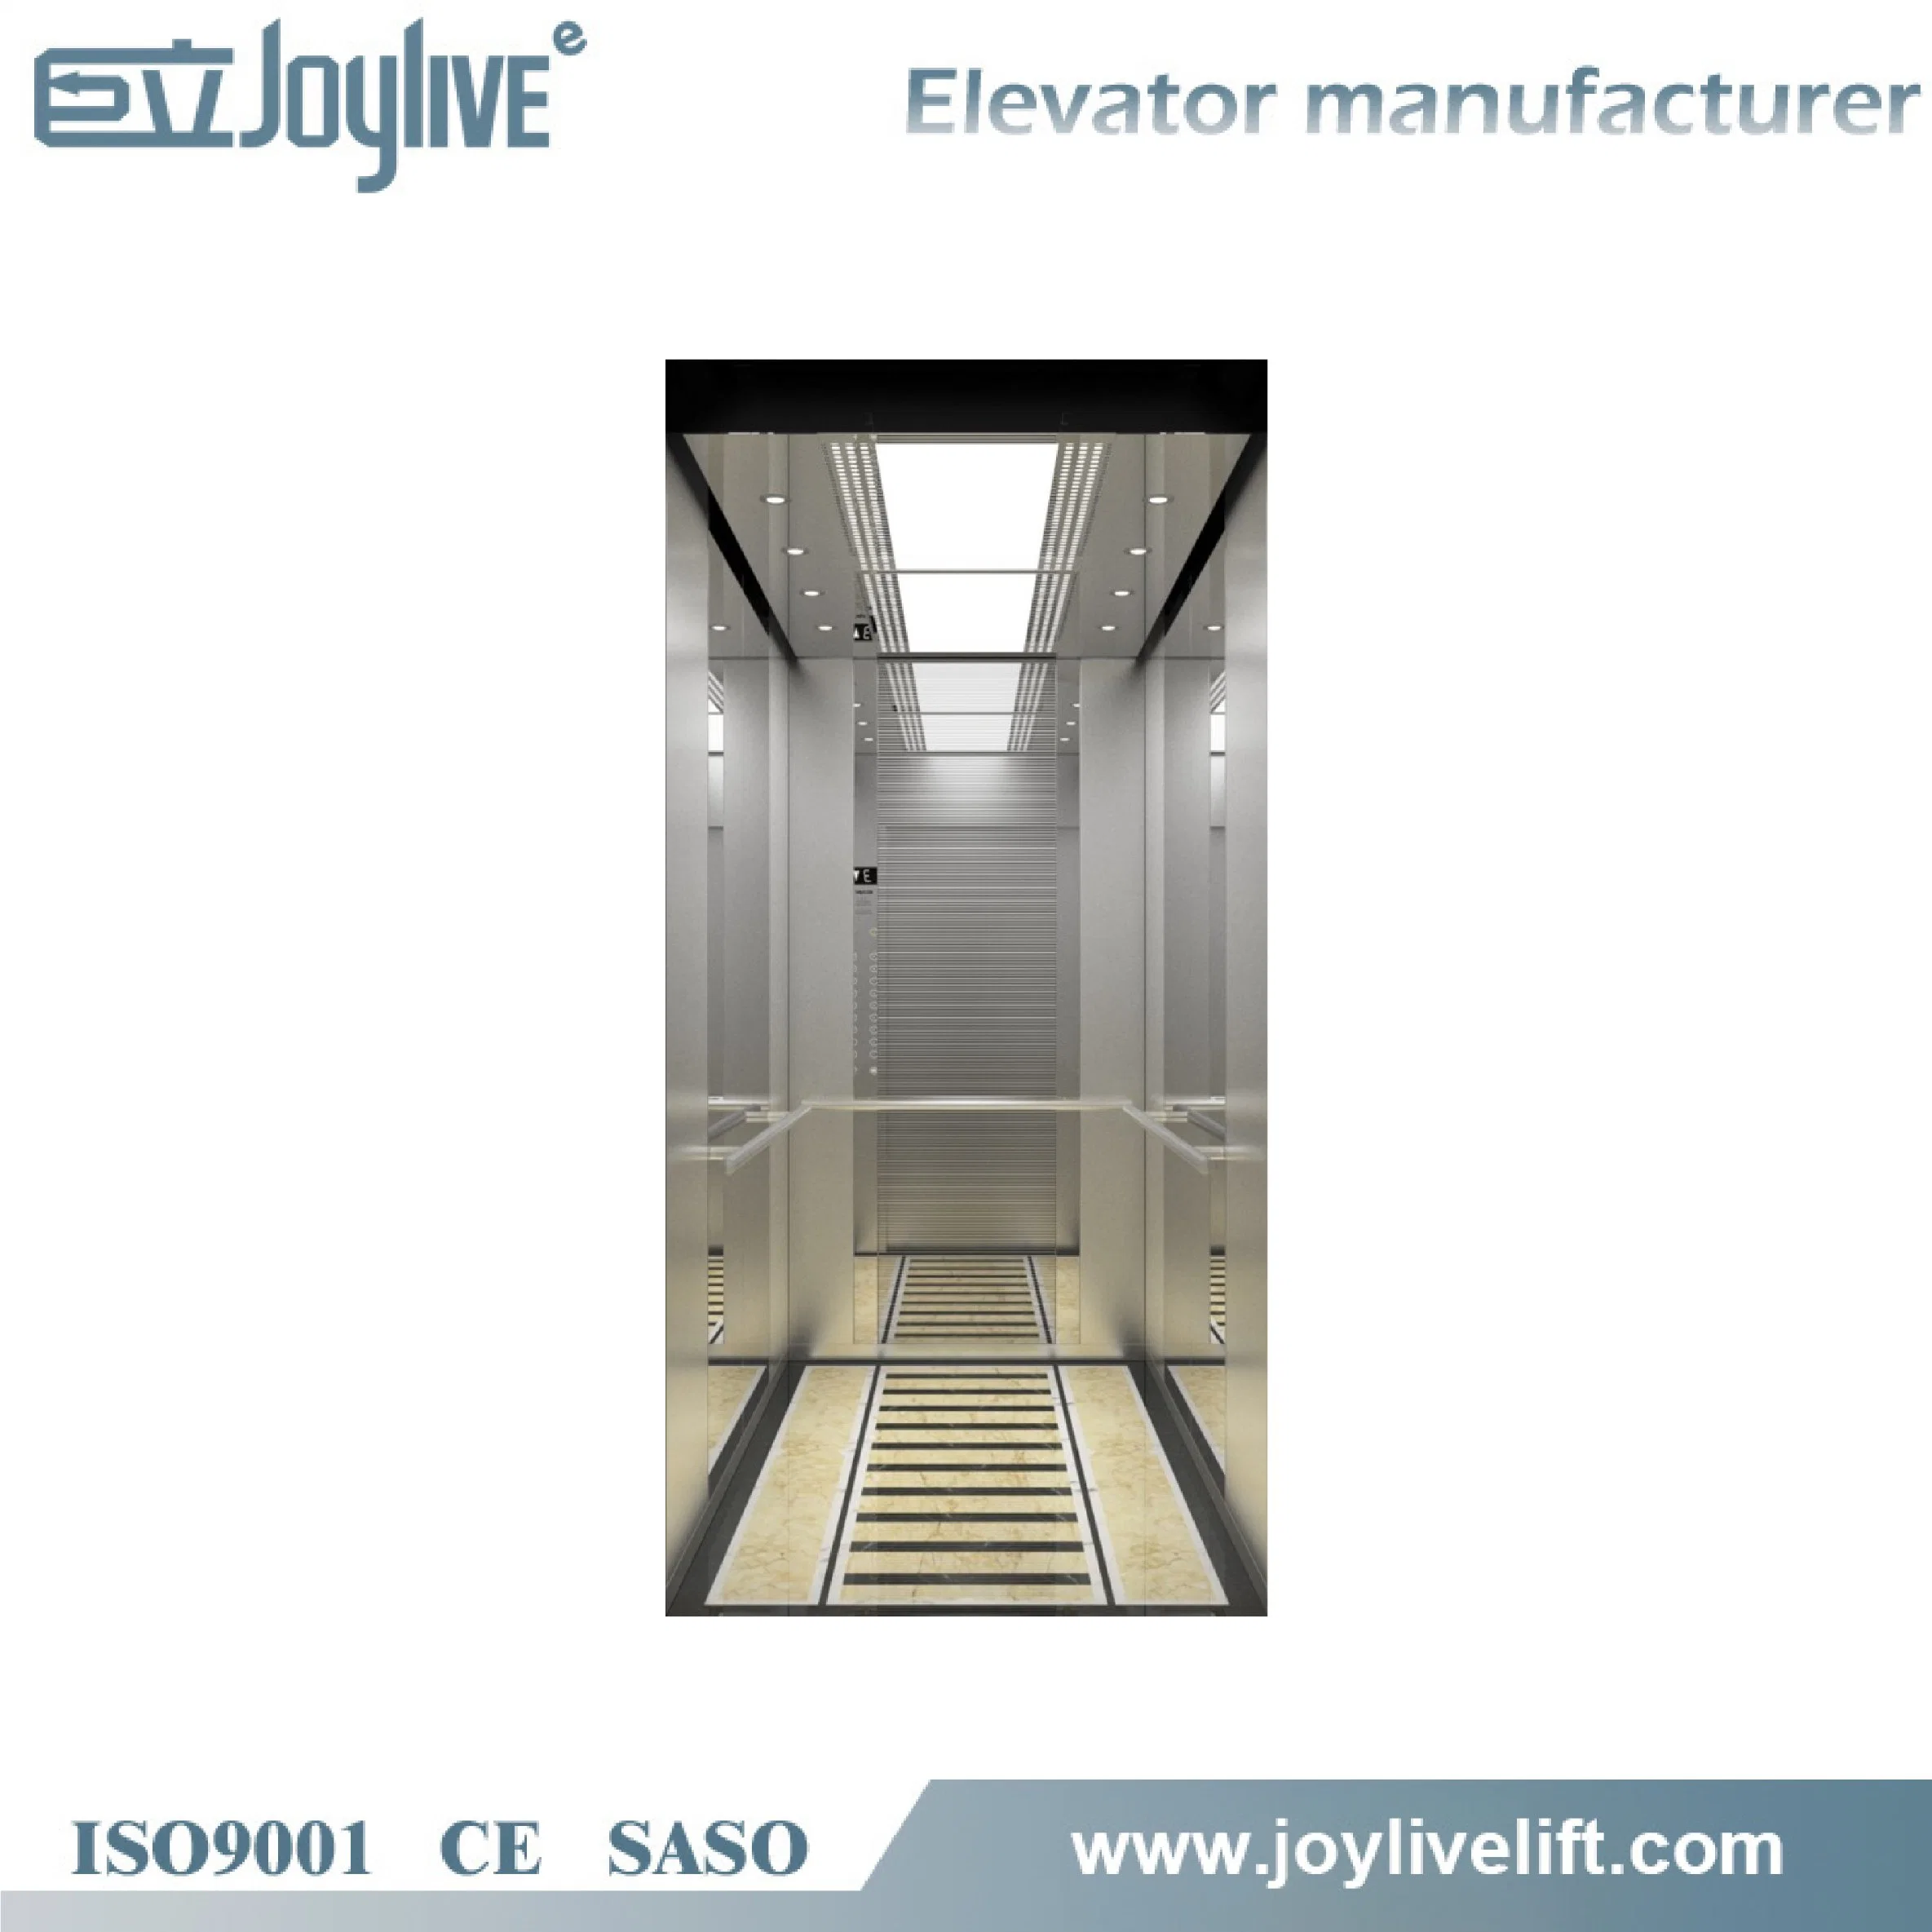 Large Car Room 800kg 600kg 1000kg Vvvf Passenger Elevator Lift for Super Mall with CE ISO